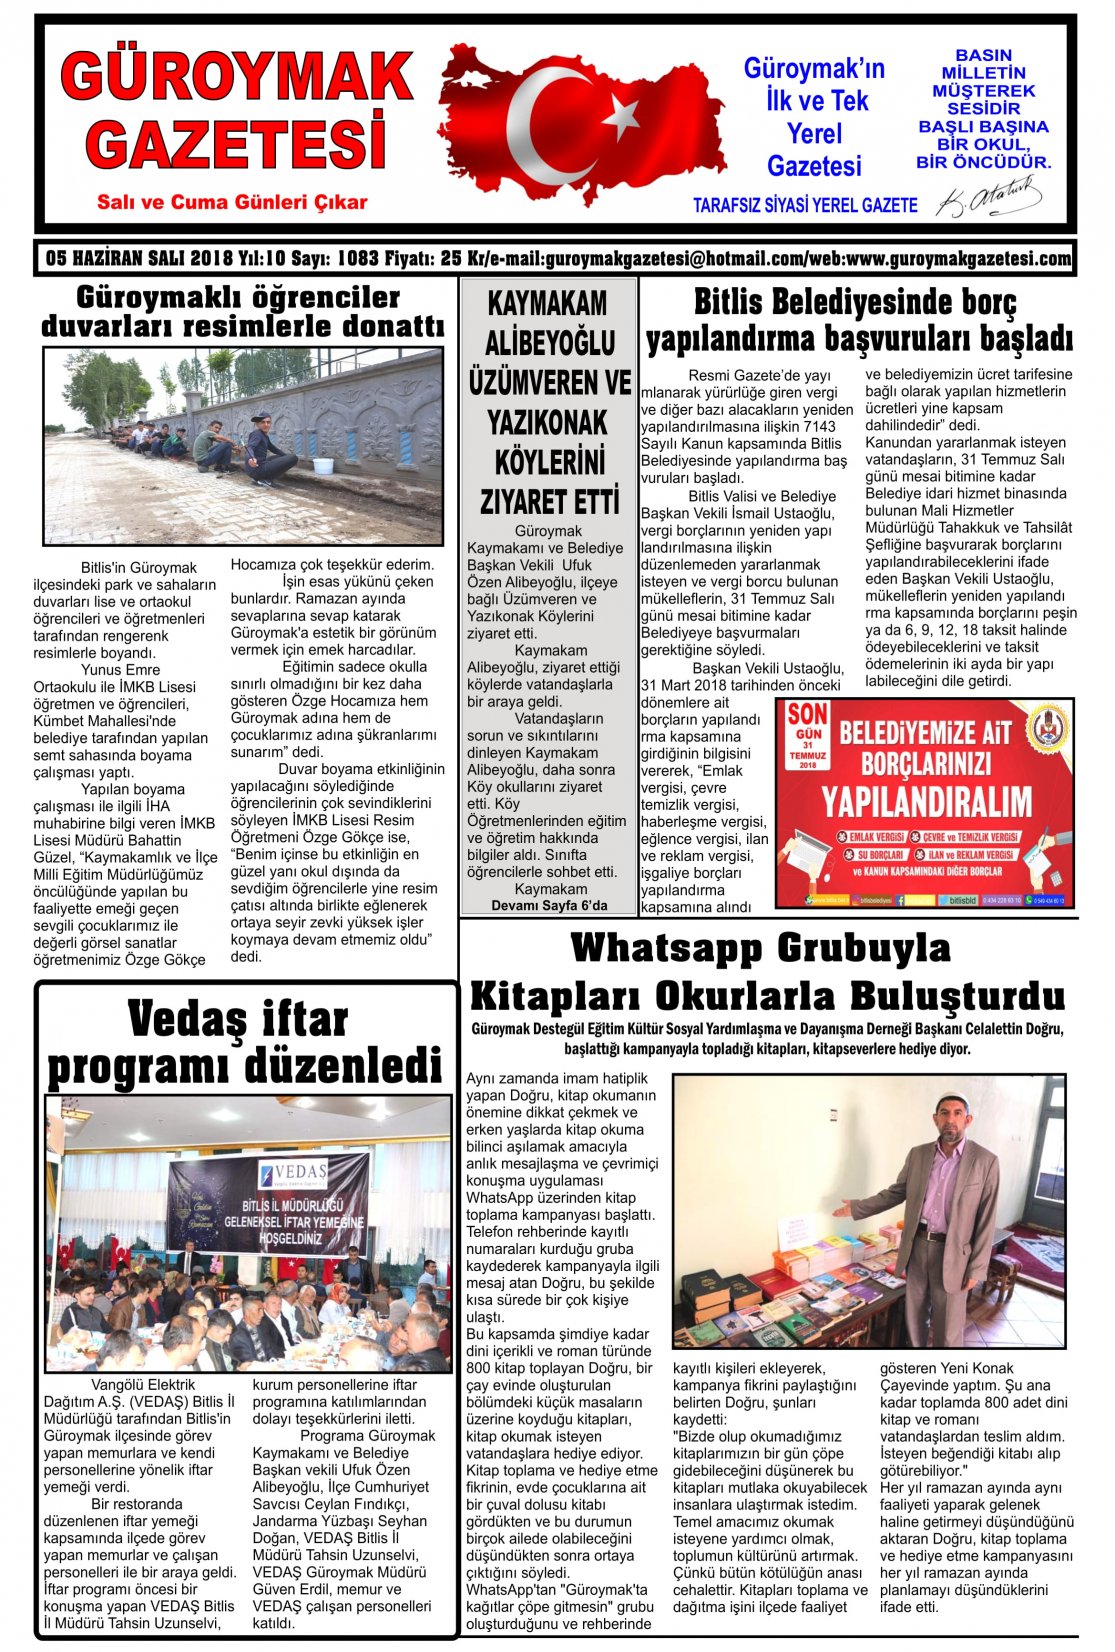 Güroymak Gazetesi 1-1.jpg Sayılı Gazete Küpürü